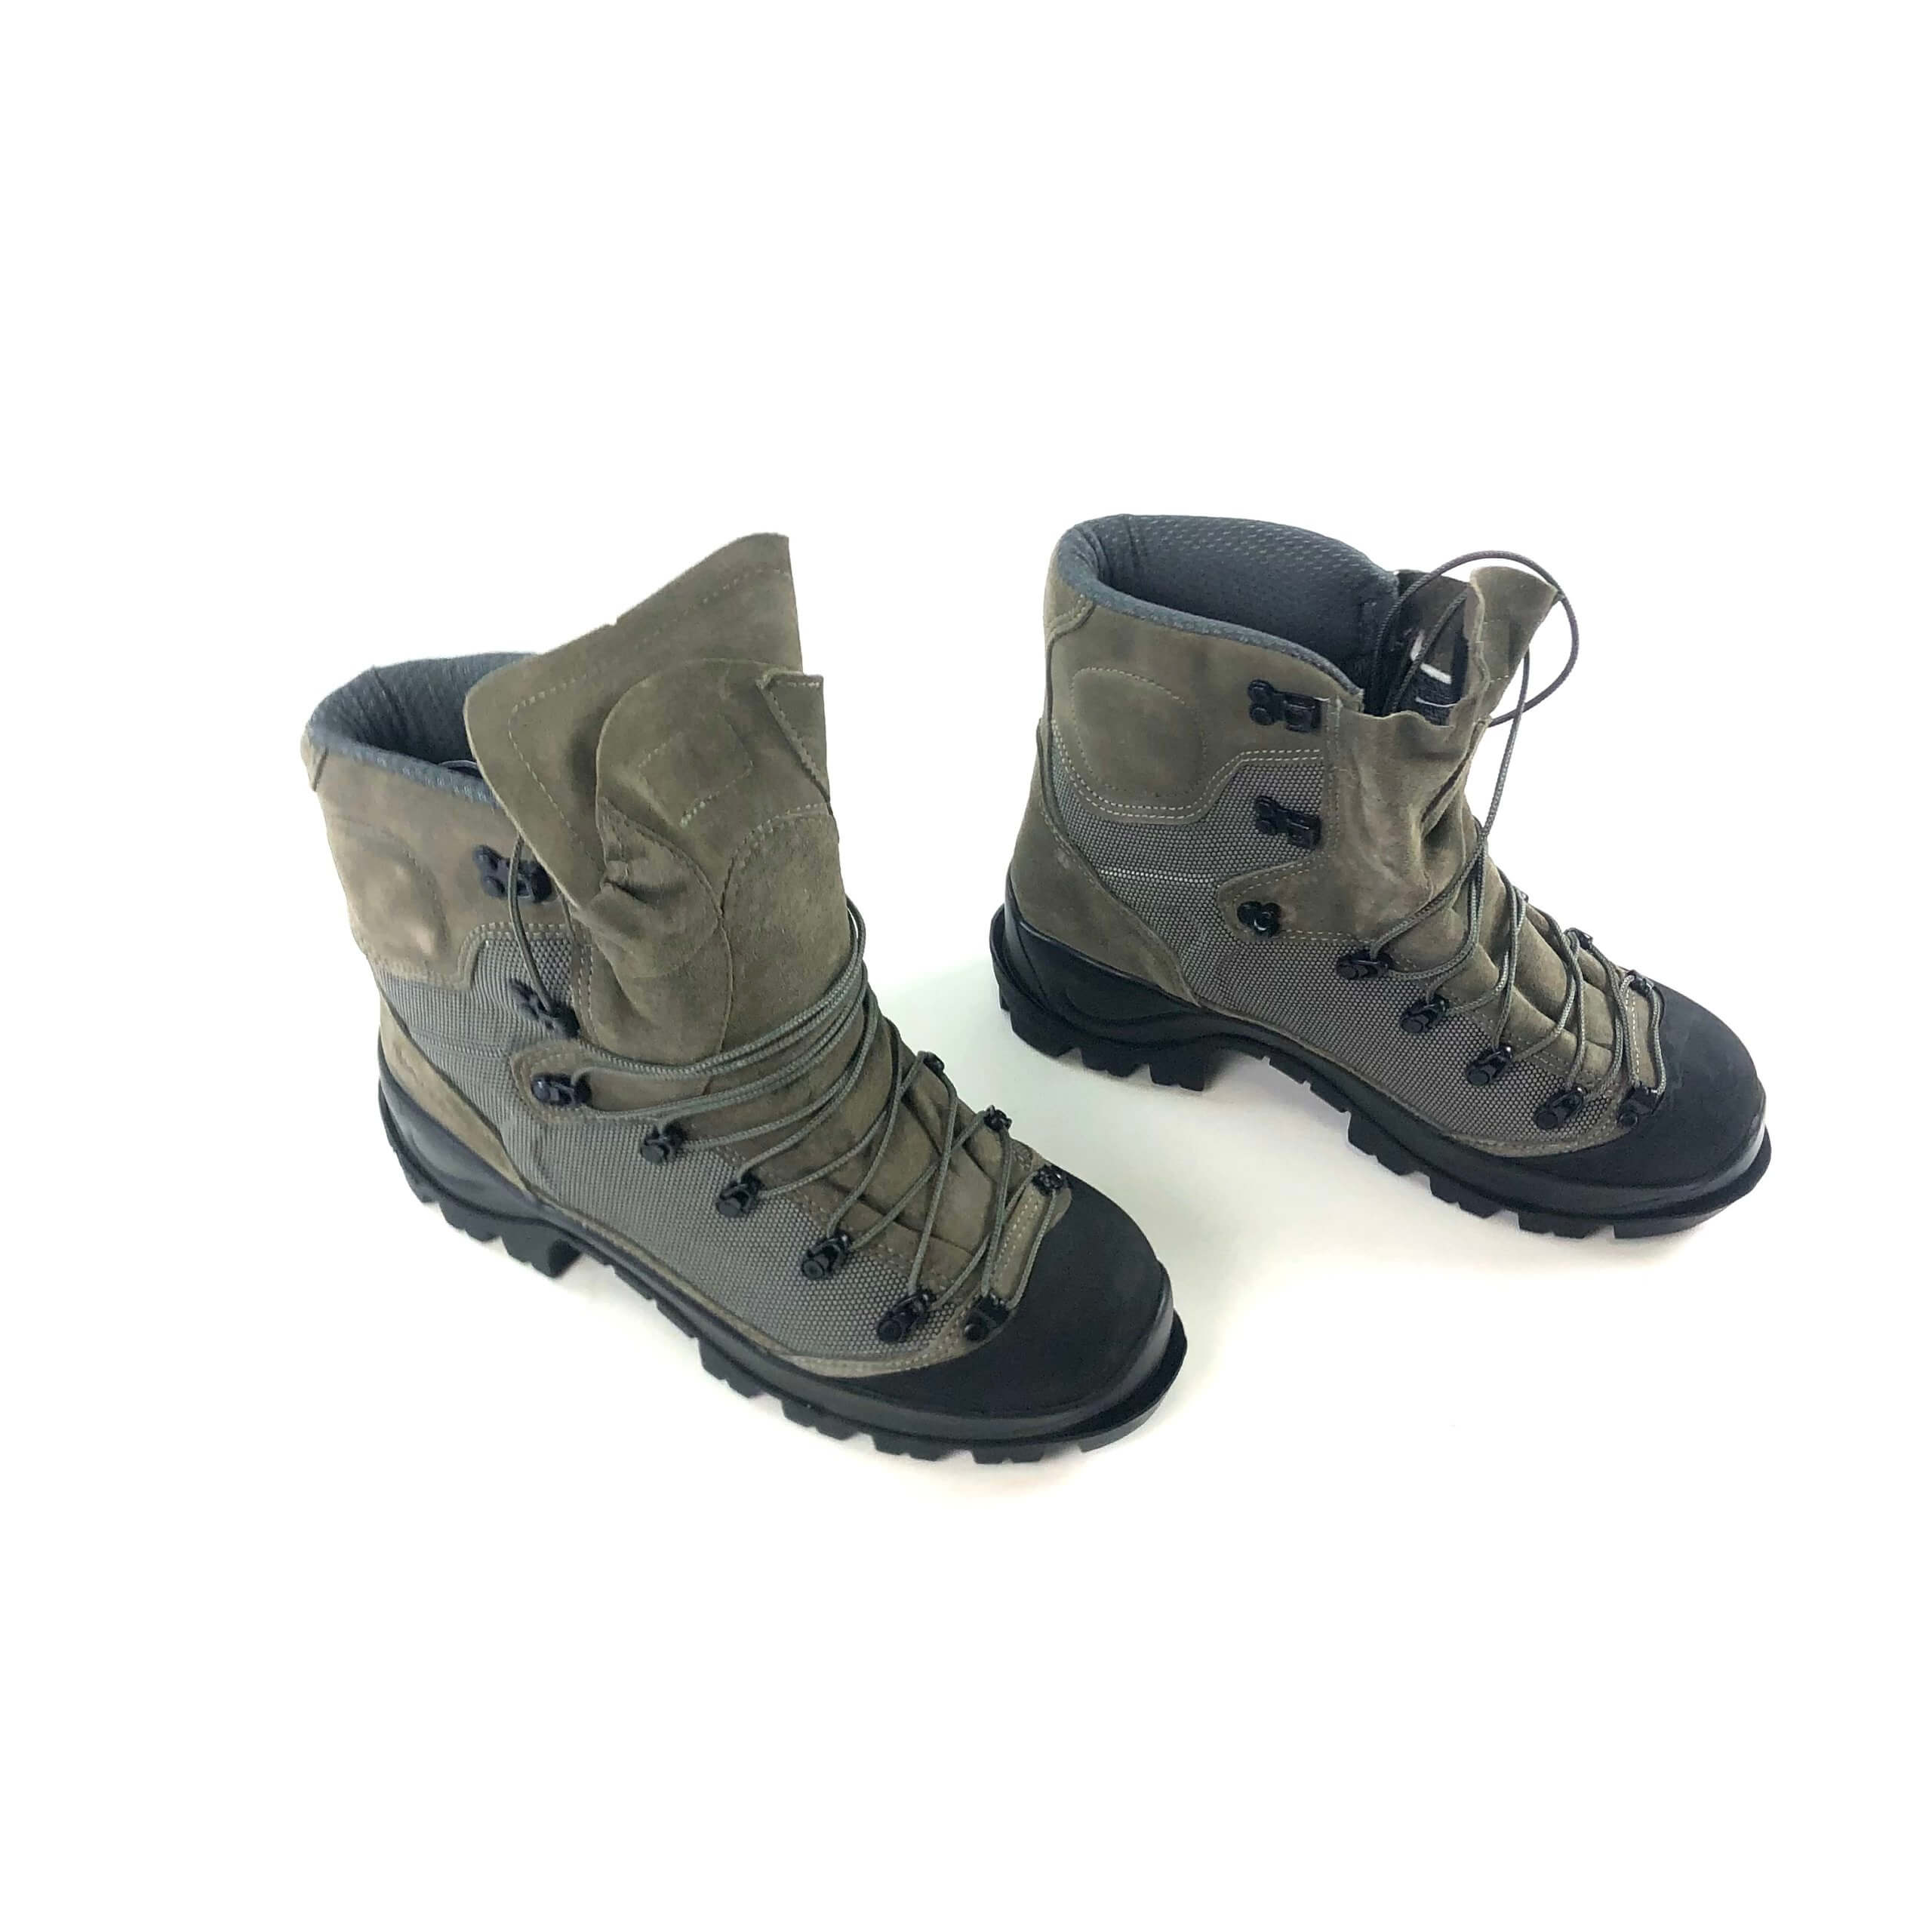 Bates Tora Bora Alpine Boots - Venture Surplus - Genuine Issue